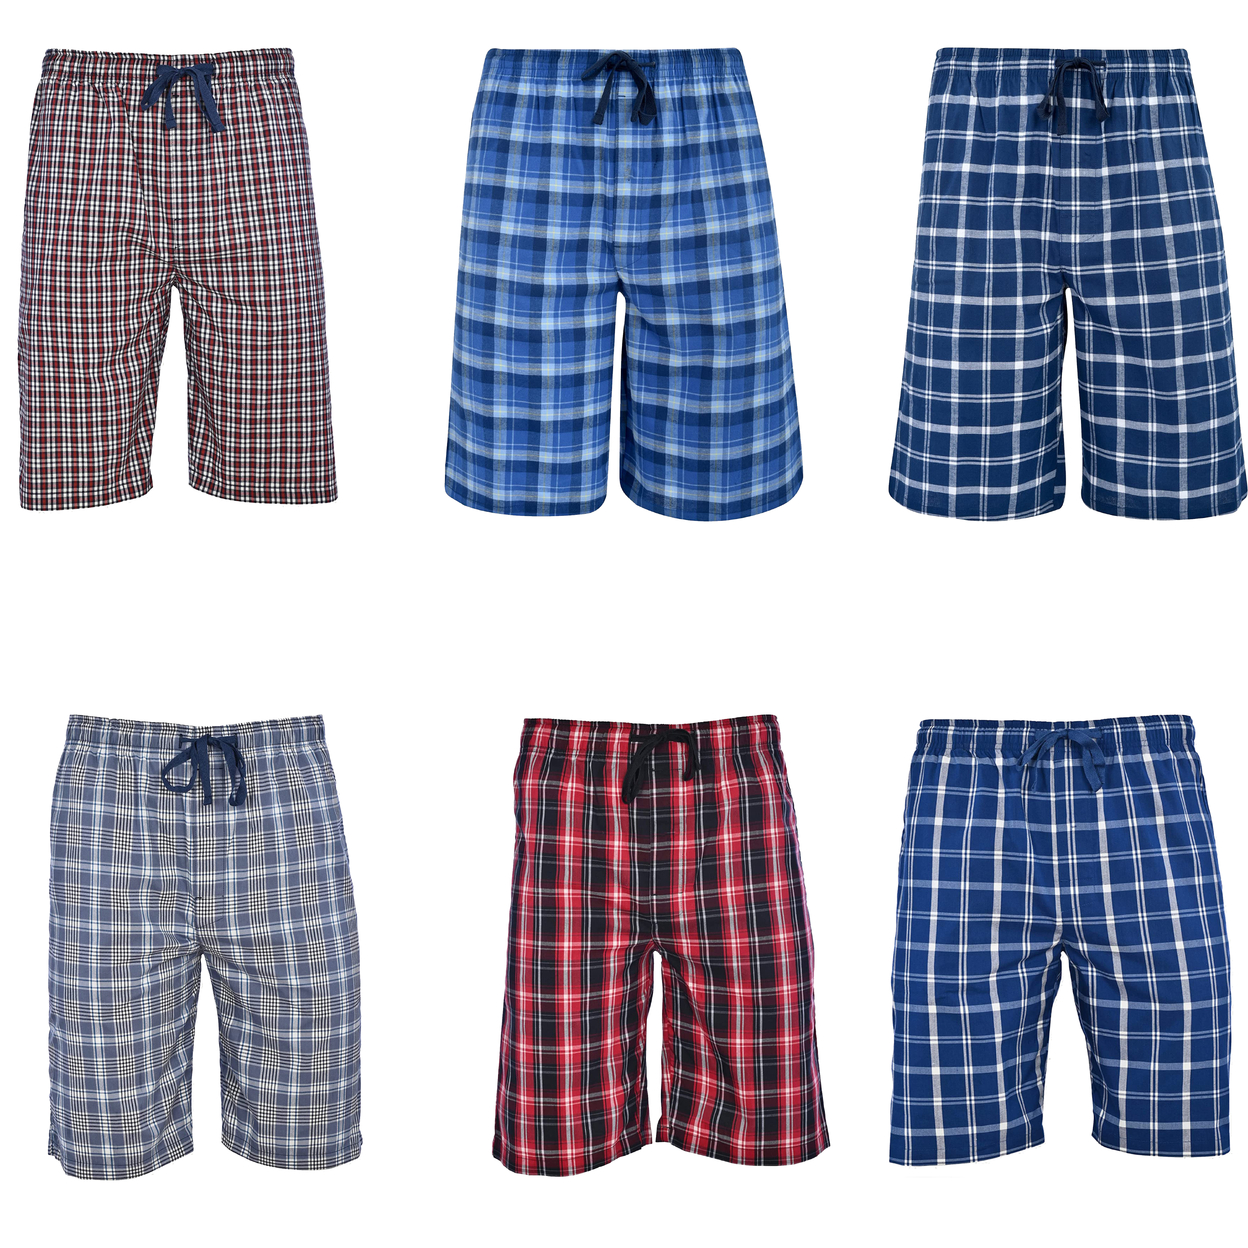 Men's Ultra-Soft Plaid Lounge Pajama Sleep Wear Shorts - Blue, Large